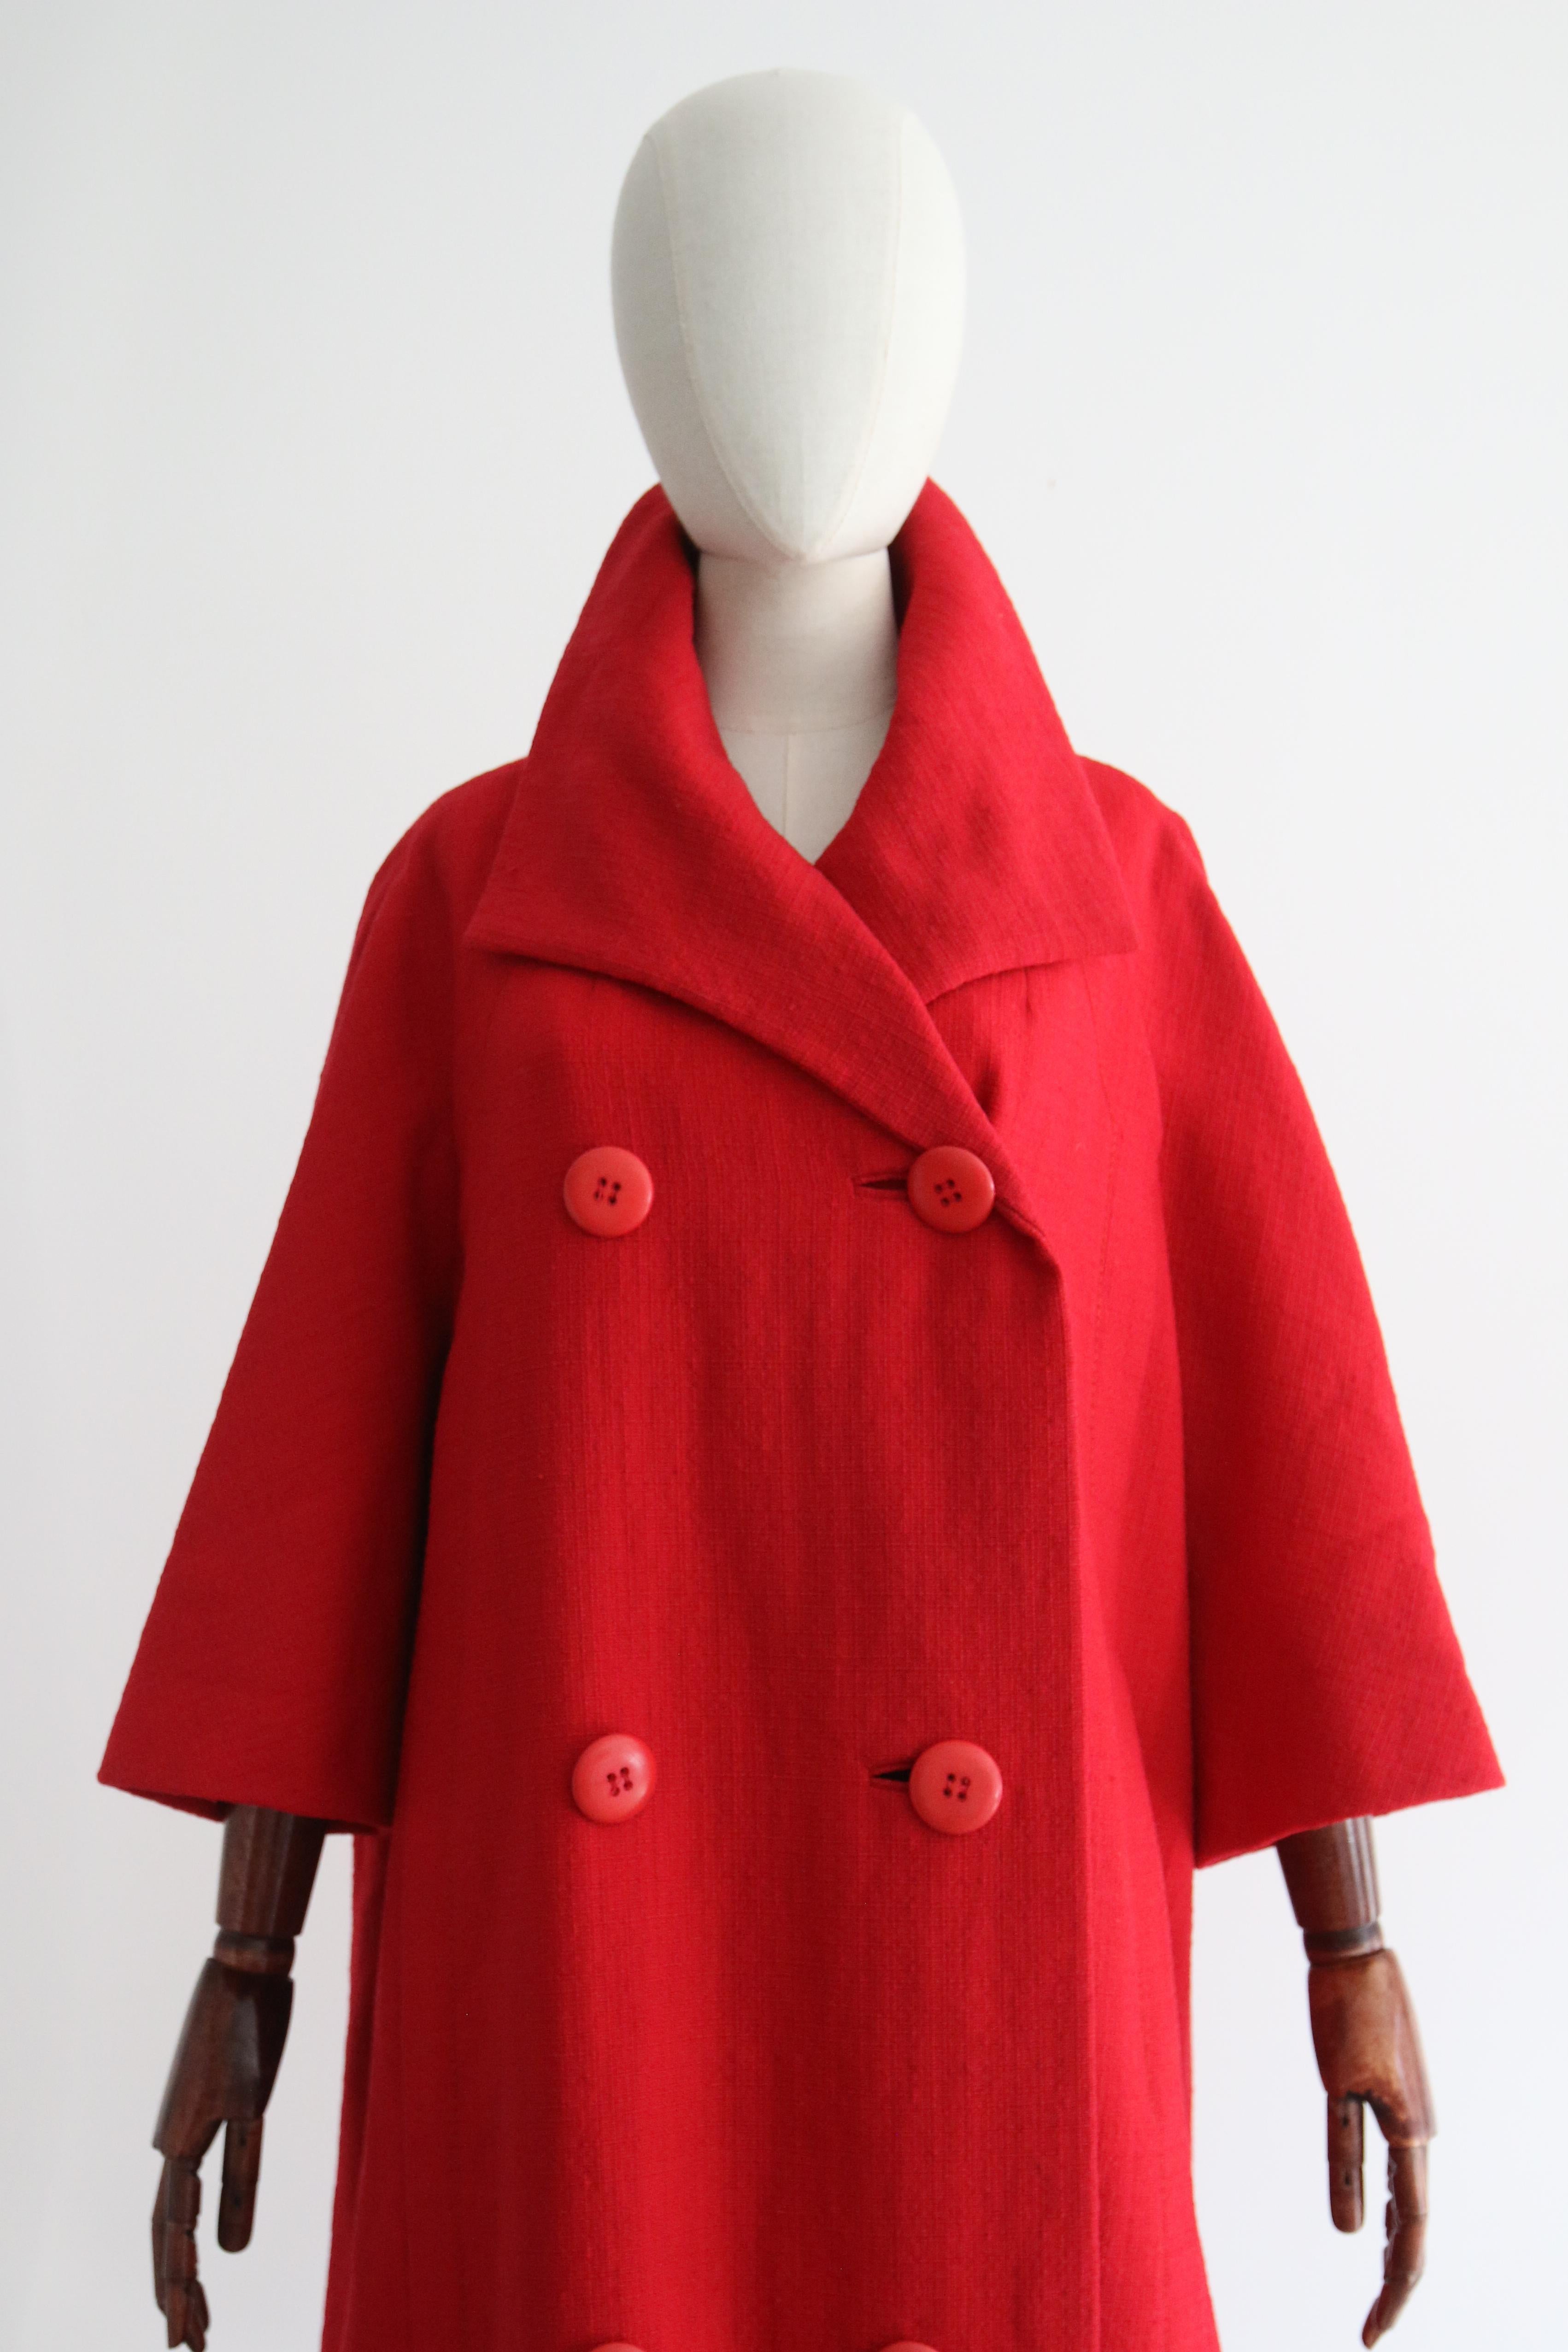 Dieser seltene rote Wollmantel von Christian Dior aus der Mitte der 1960er Jahre ist eine Rarität und das perfekte Accessoire für Ihre Übergangsgarderobe. 

Der V-förmige Ausschnitt des Mantels wird von einem breiten, spitzen Kragen eingerahmt, der